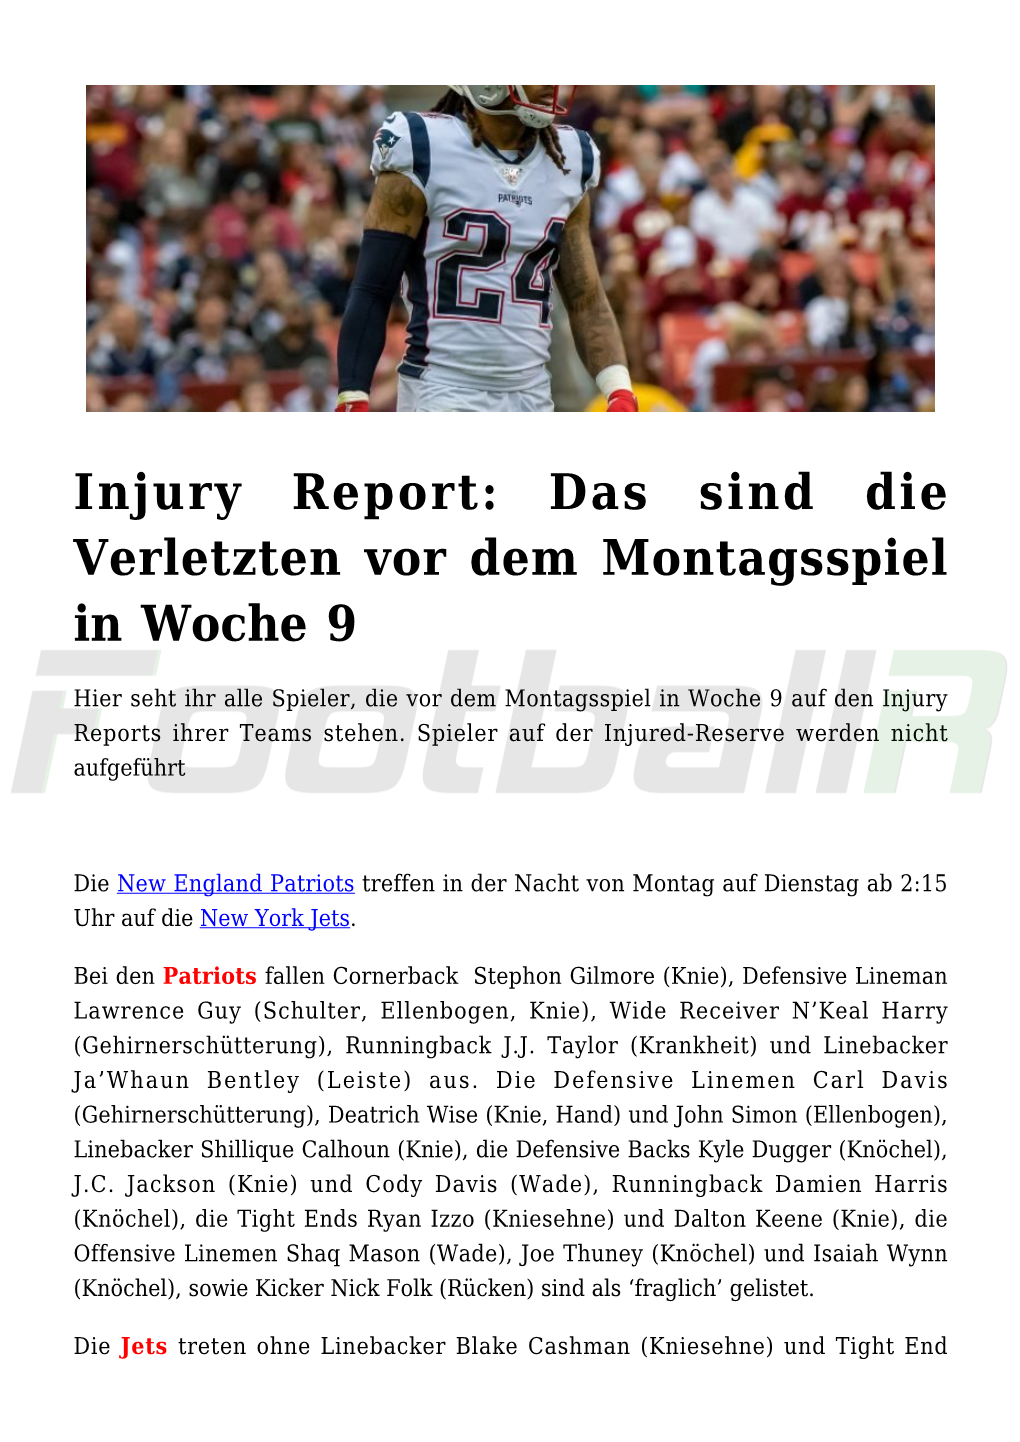 Injury Report: Das Sind Die Verletzten Vor Dem Montagsspiel in Woche 9